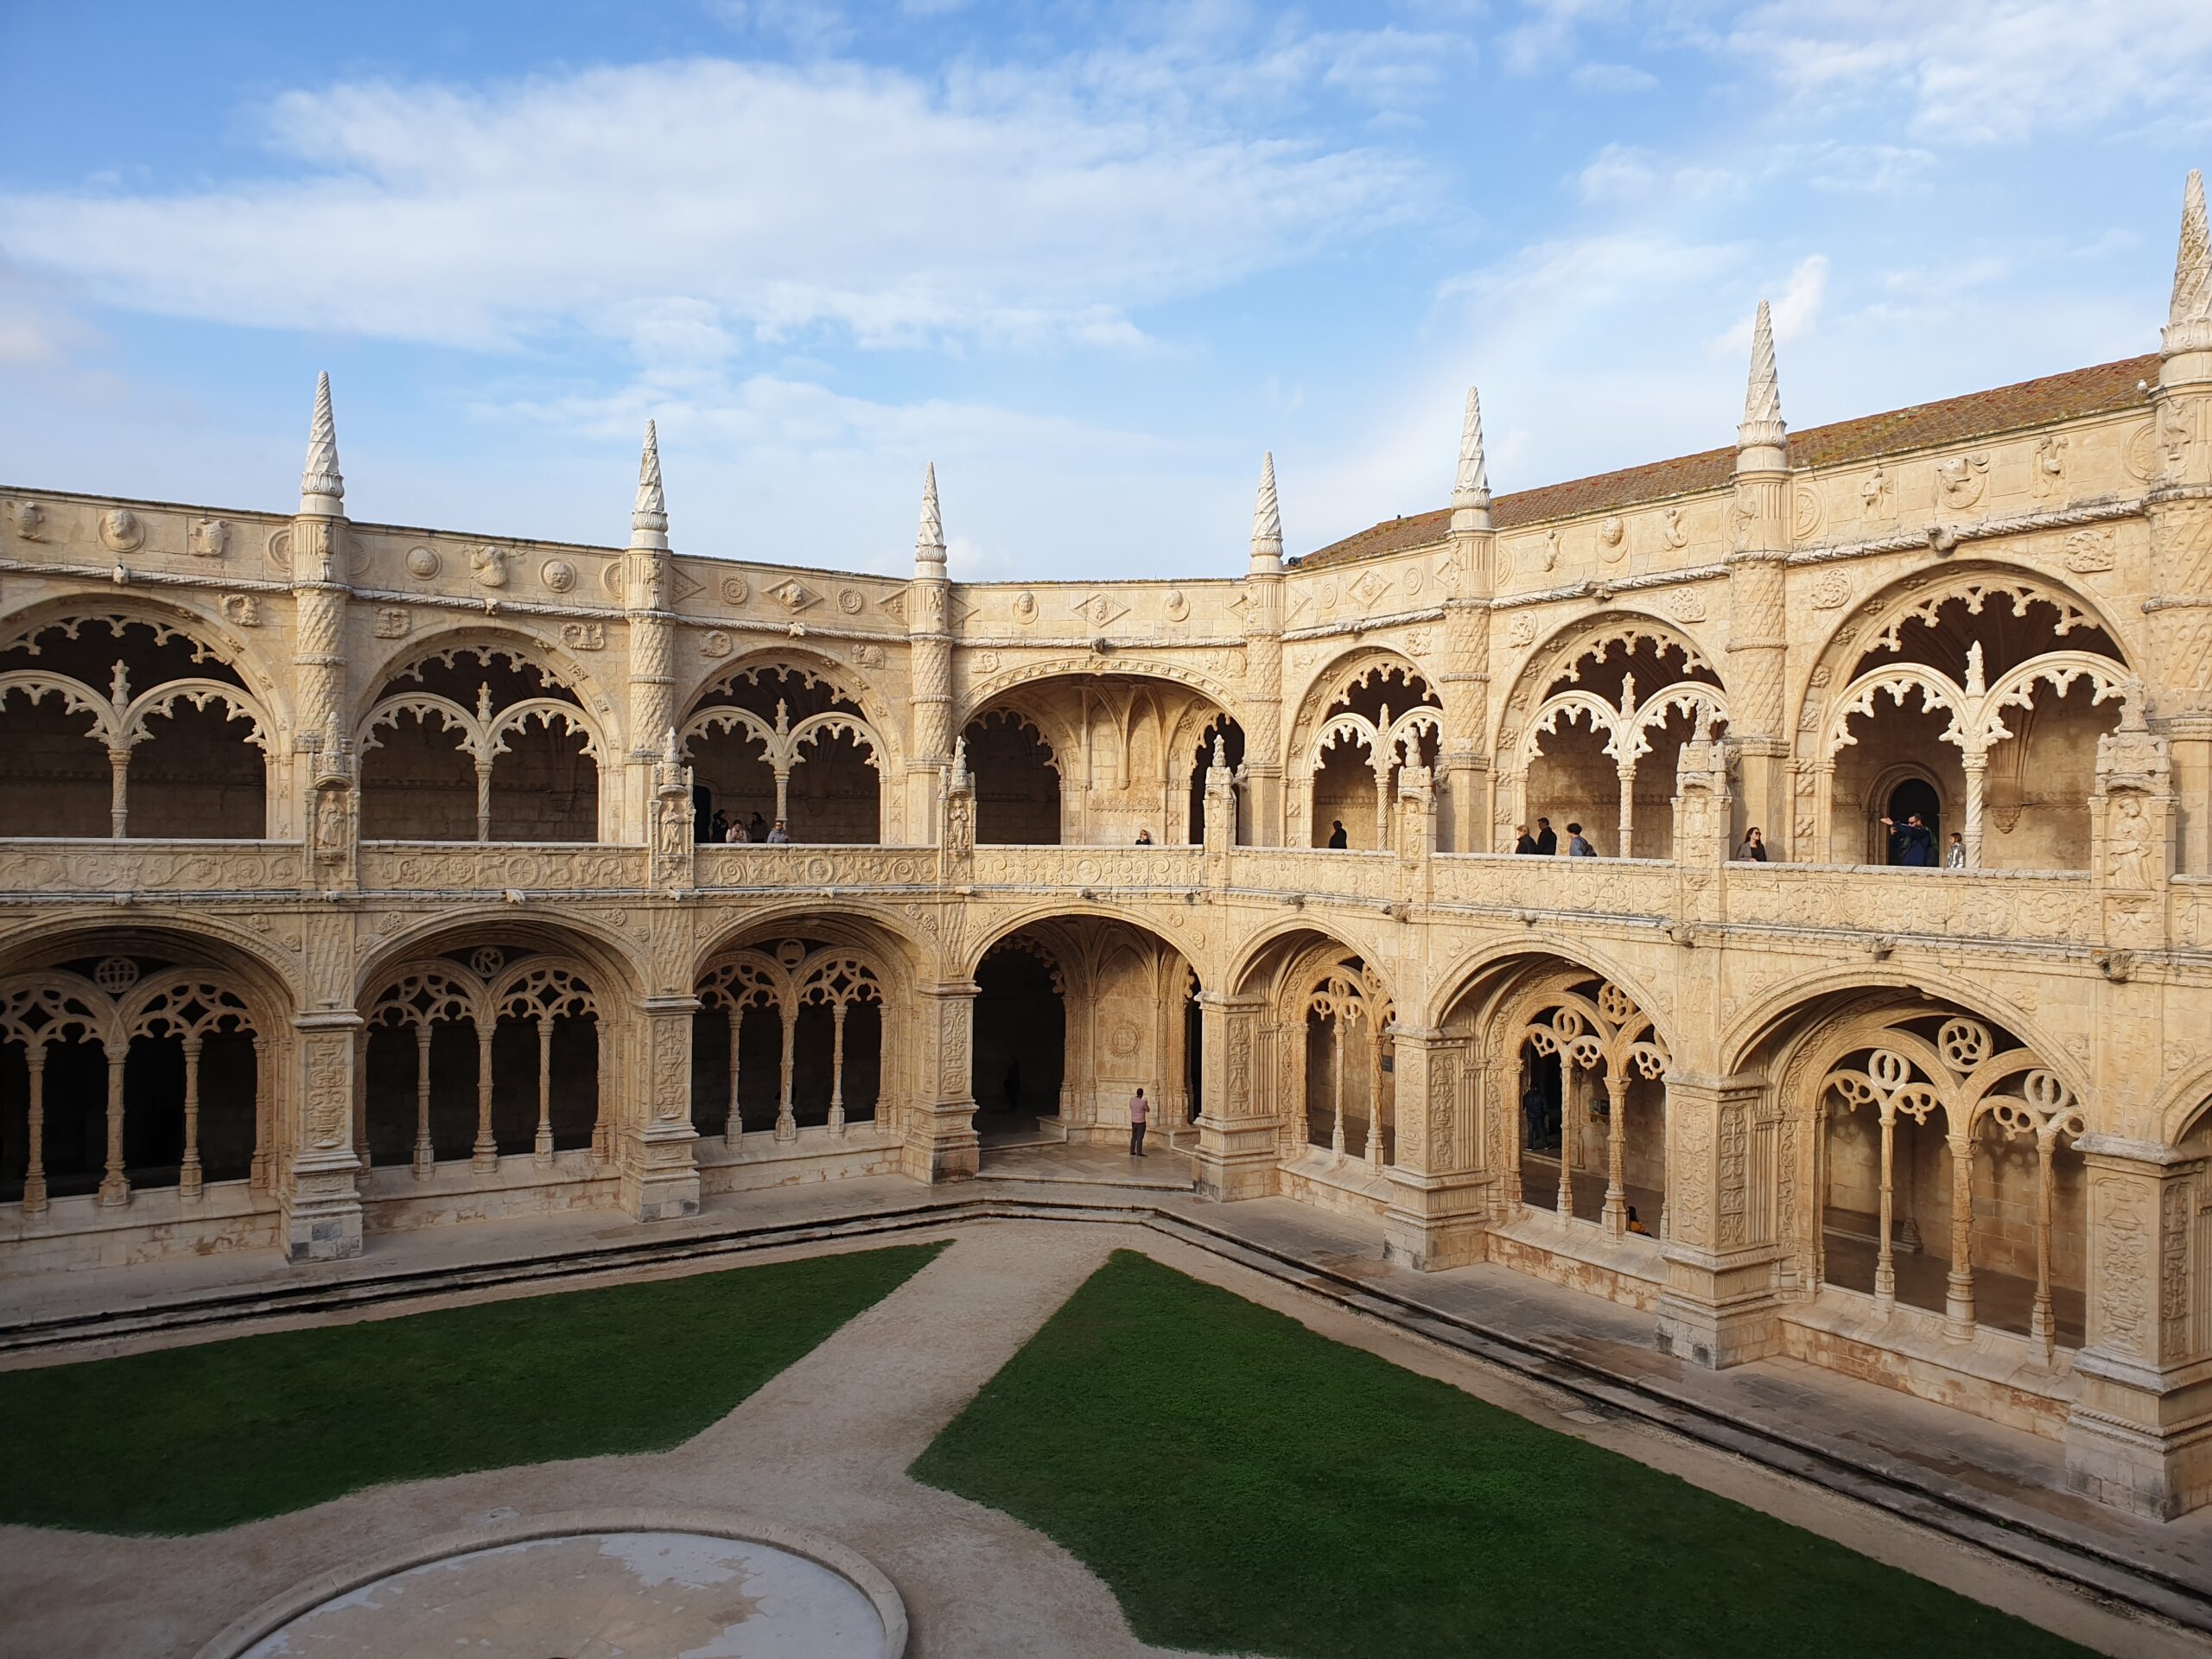 In foto si vede il chiostro del Monastero dos jeronimos caratterizzato da tante arcate e guglie finemente lavorate